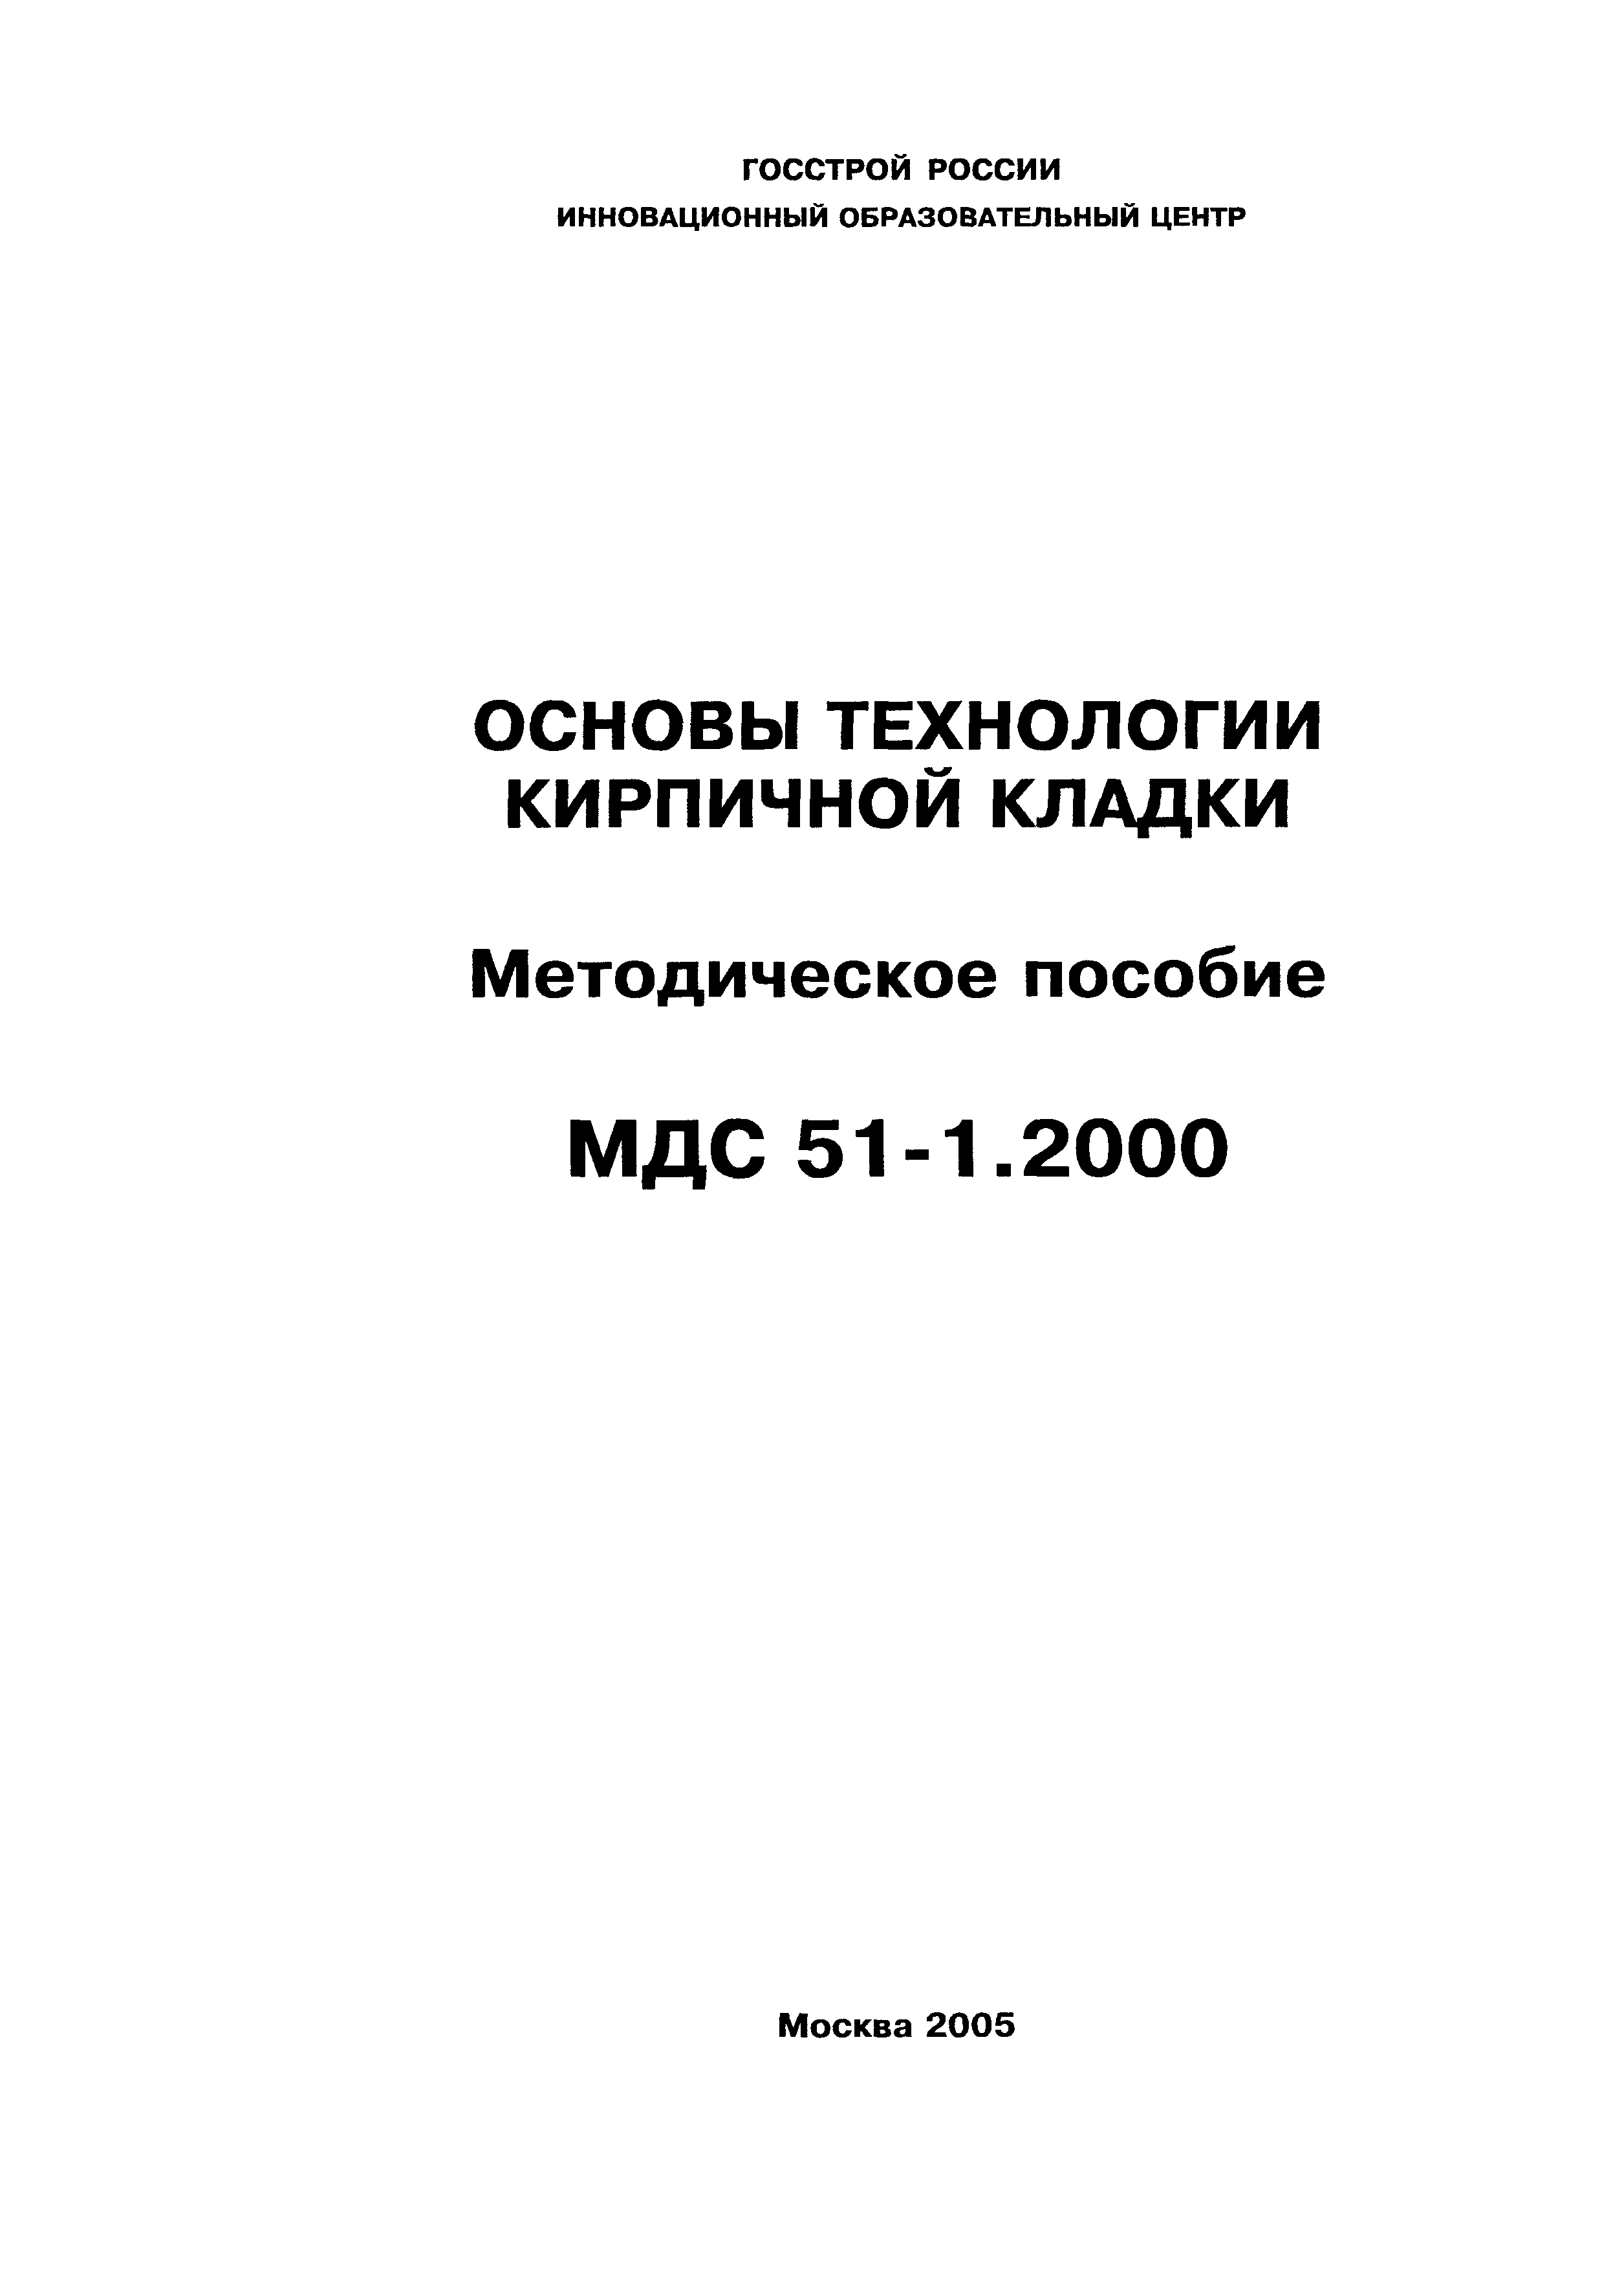 МДС 51-1.2000